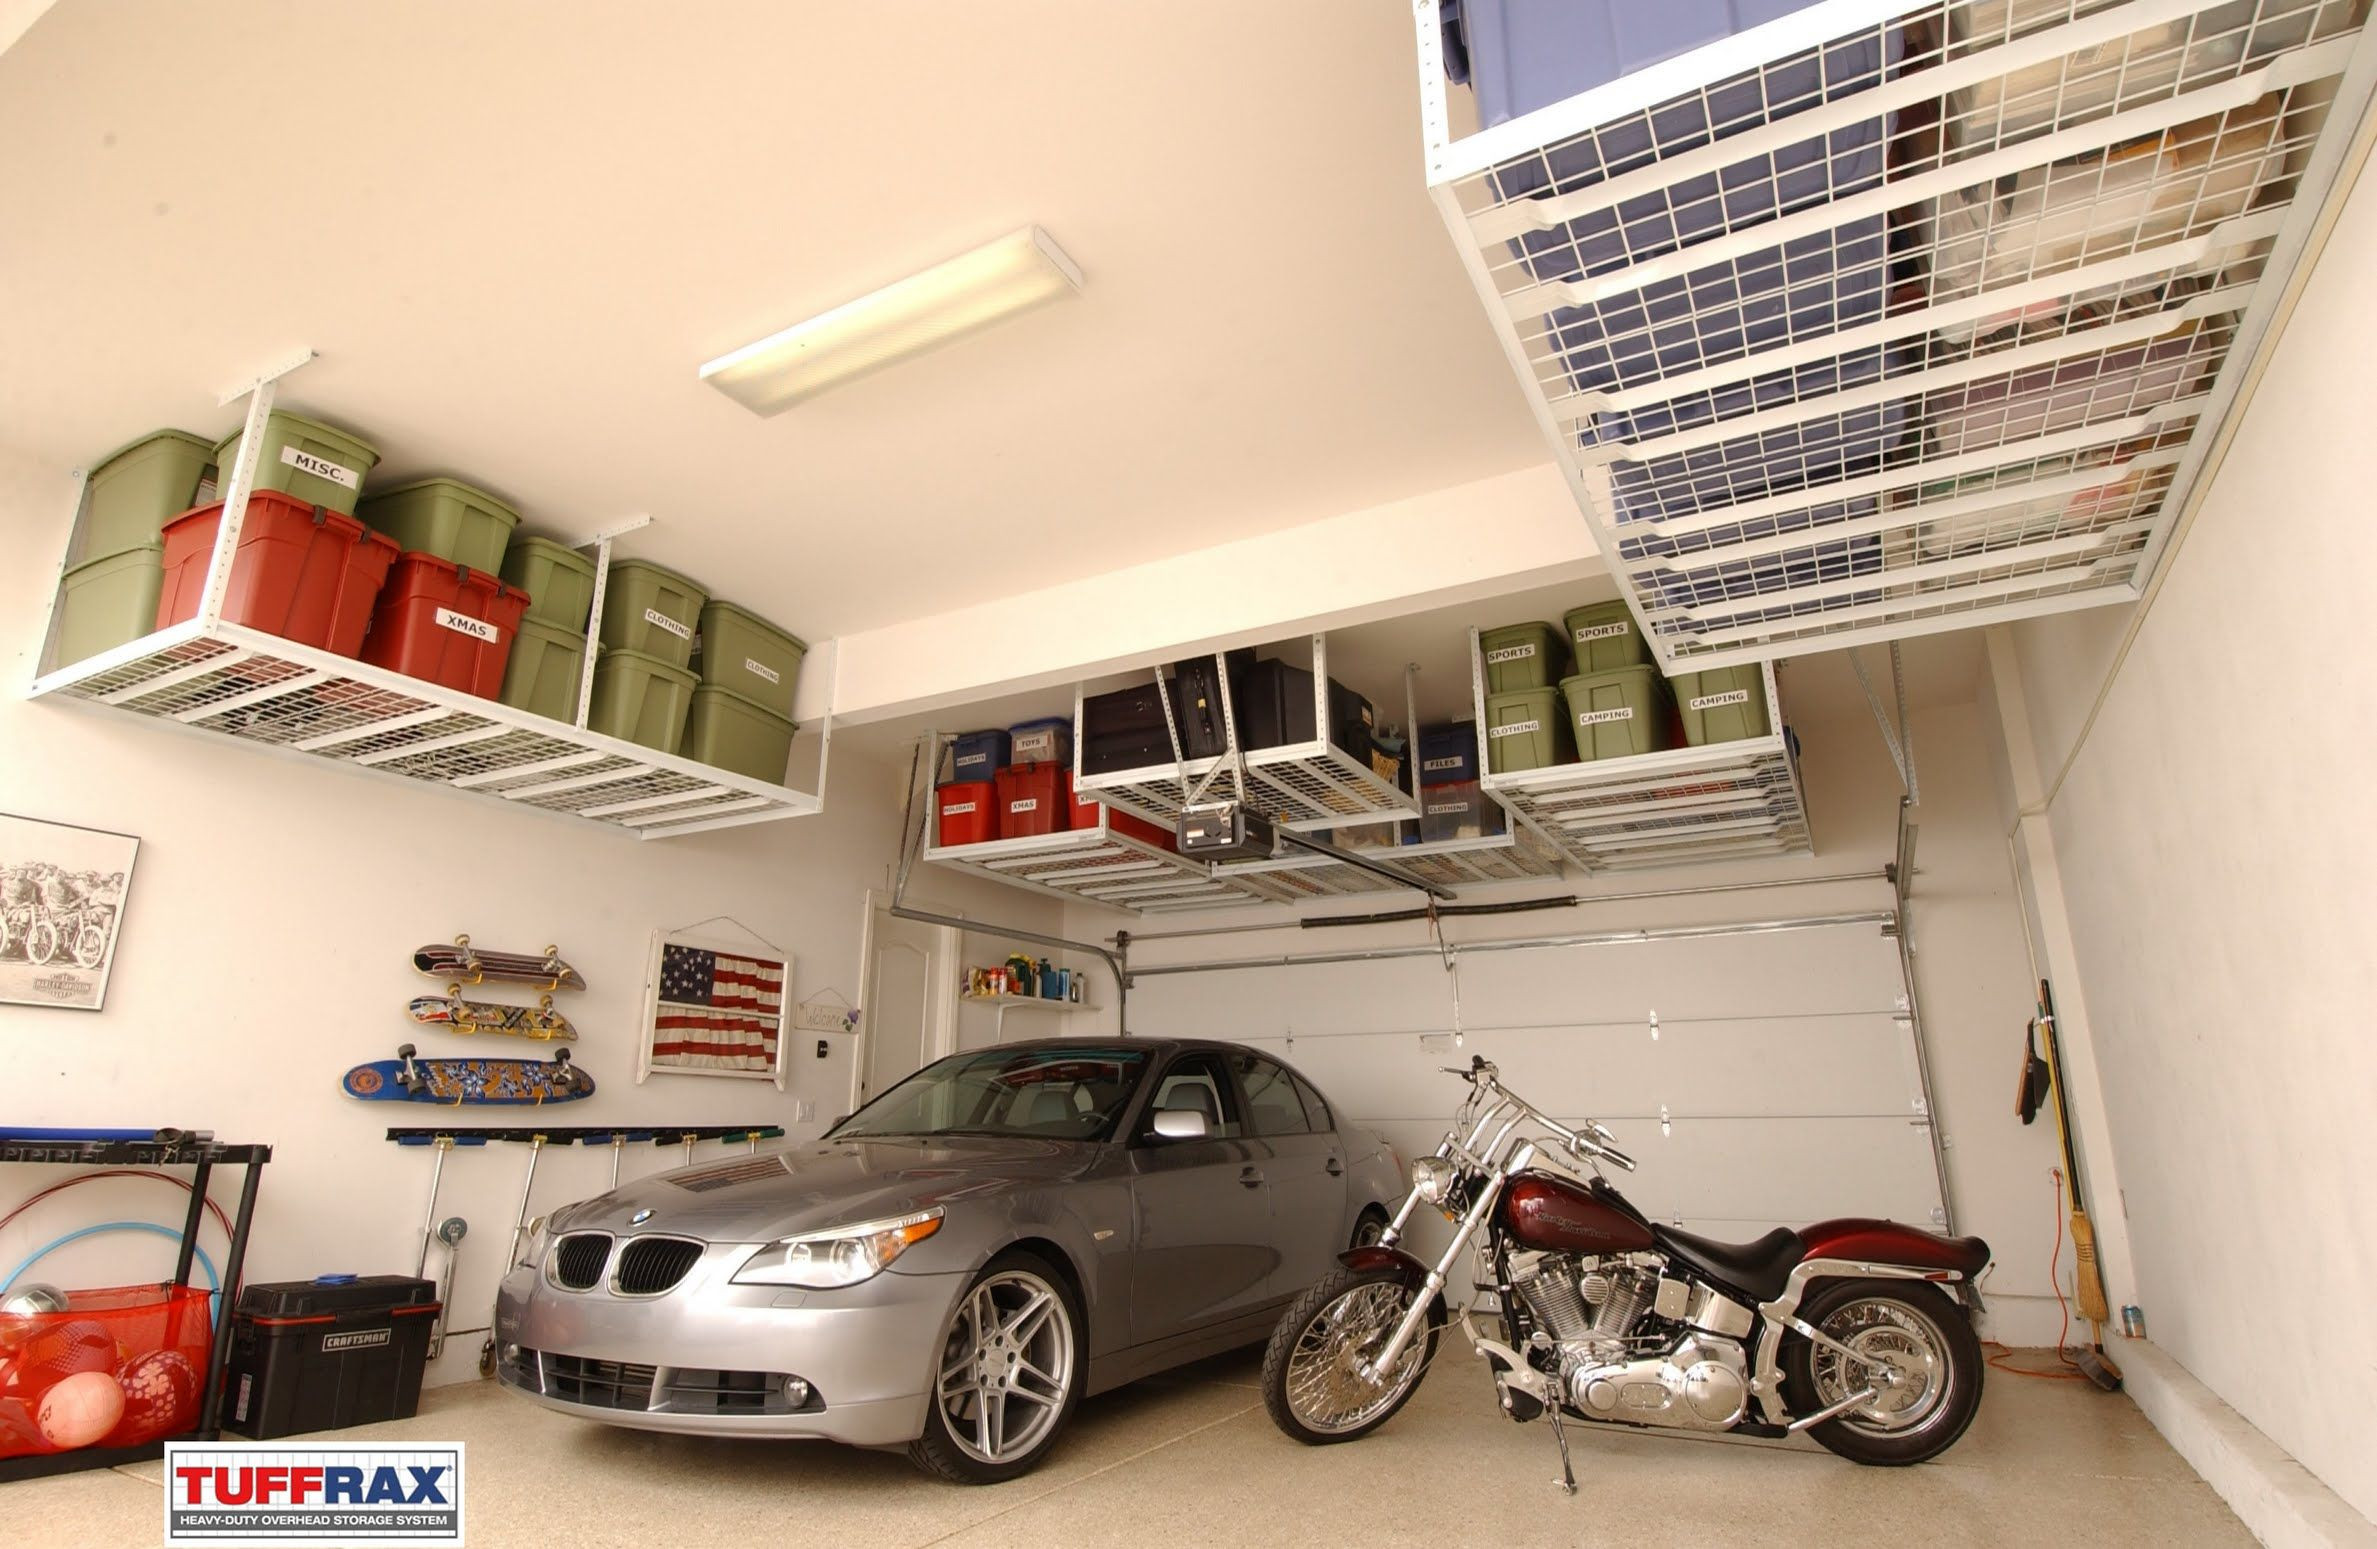 Garage Organization Home Depot
 Overhead Garage Storage Systems in 2019